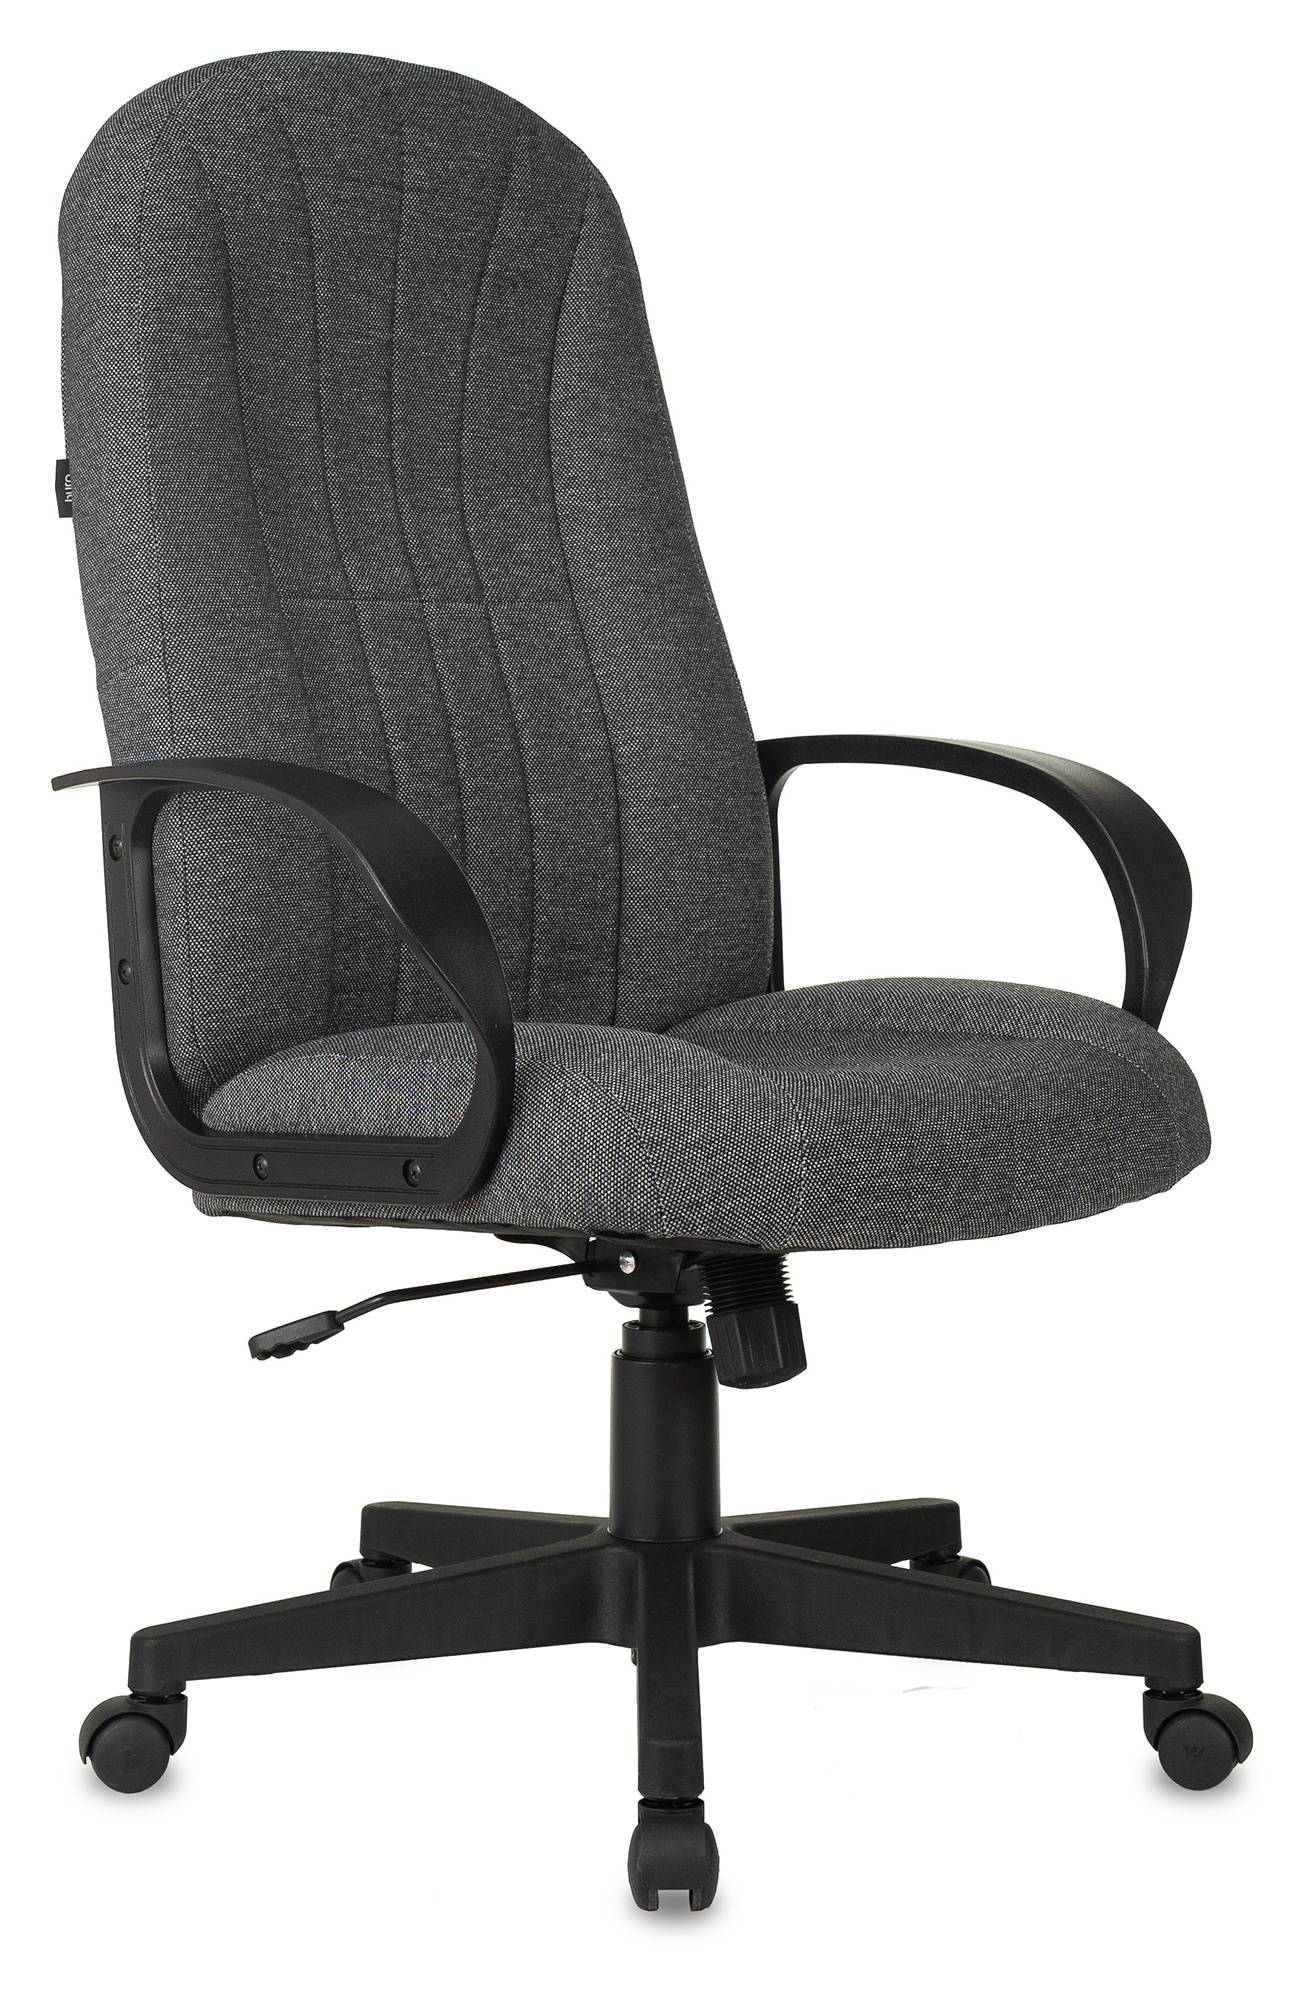 Кресло руководителя Бюрократ T-898, обивка: ткань, цвет: серый 3C1